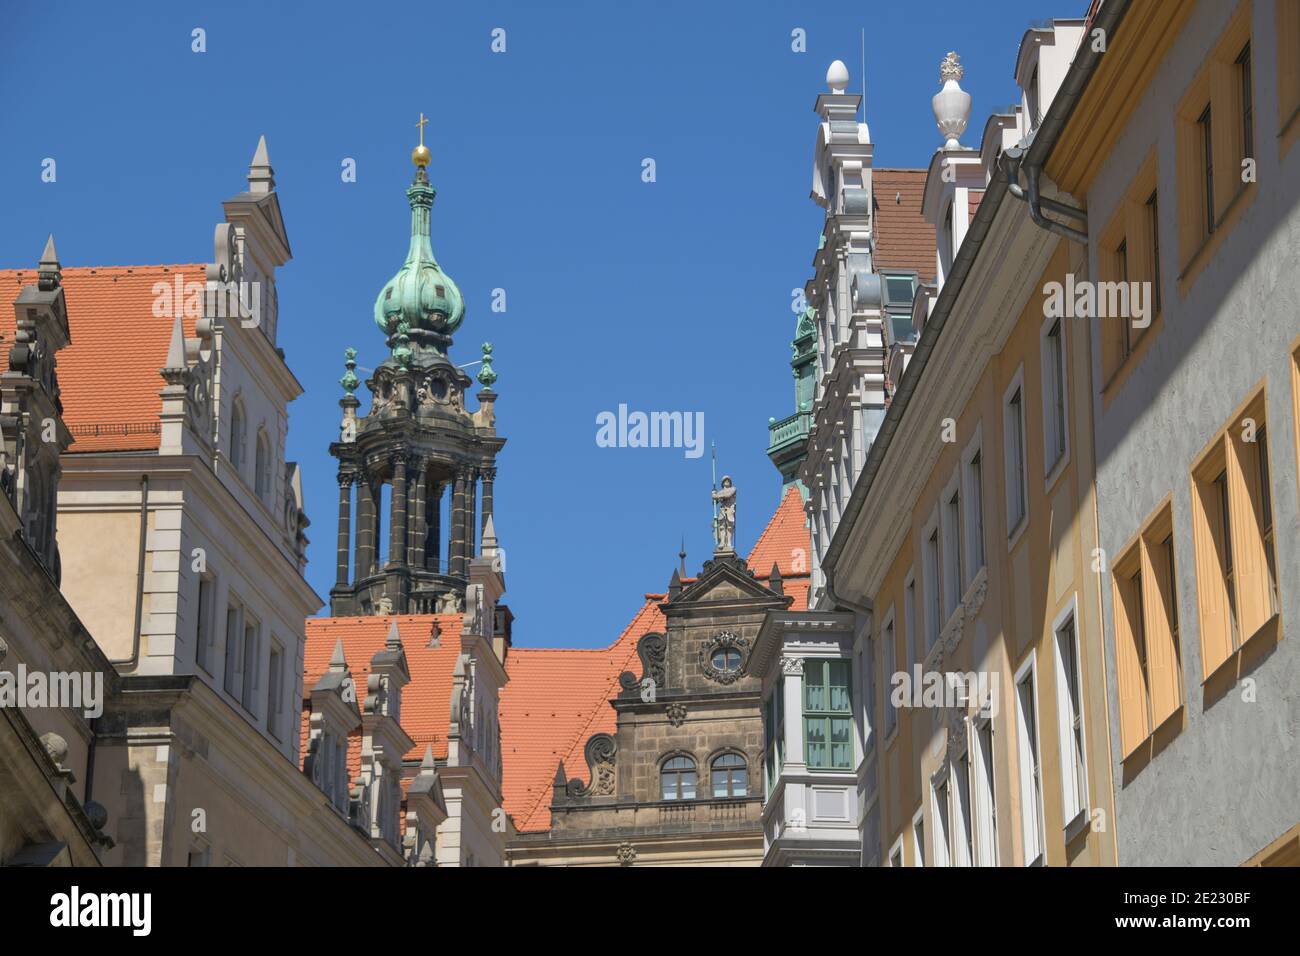 Fassaden und Giebel, Schloßstraße, Dresden, Sachsen, Deutschland Stock Photo